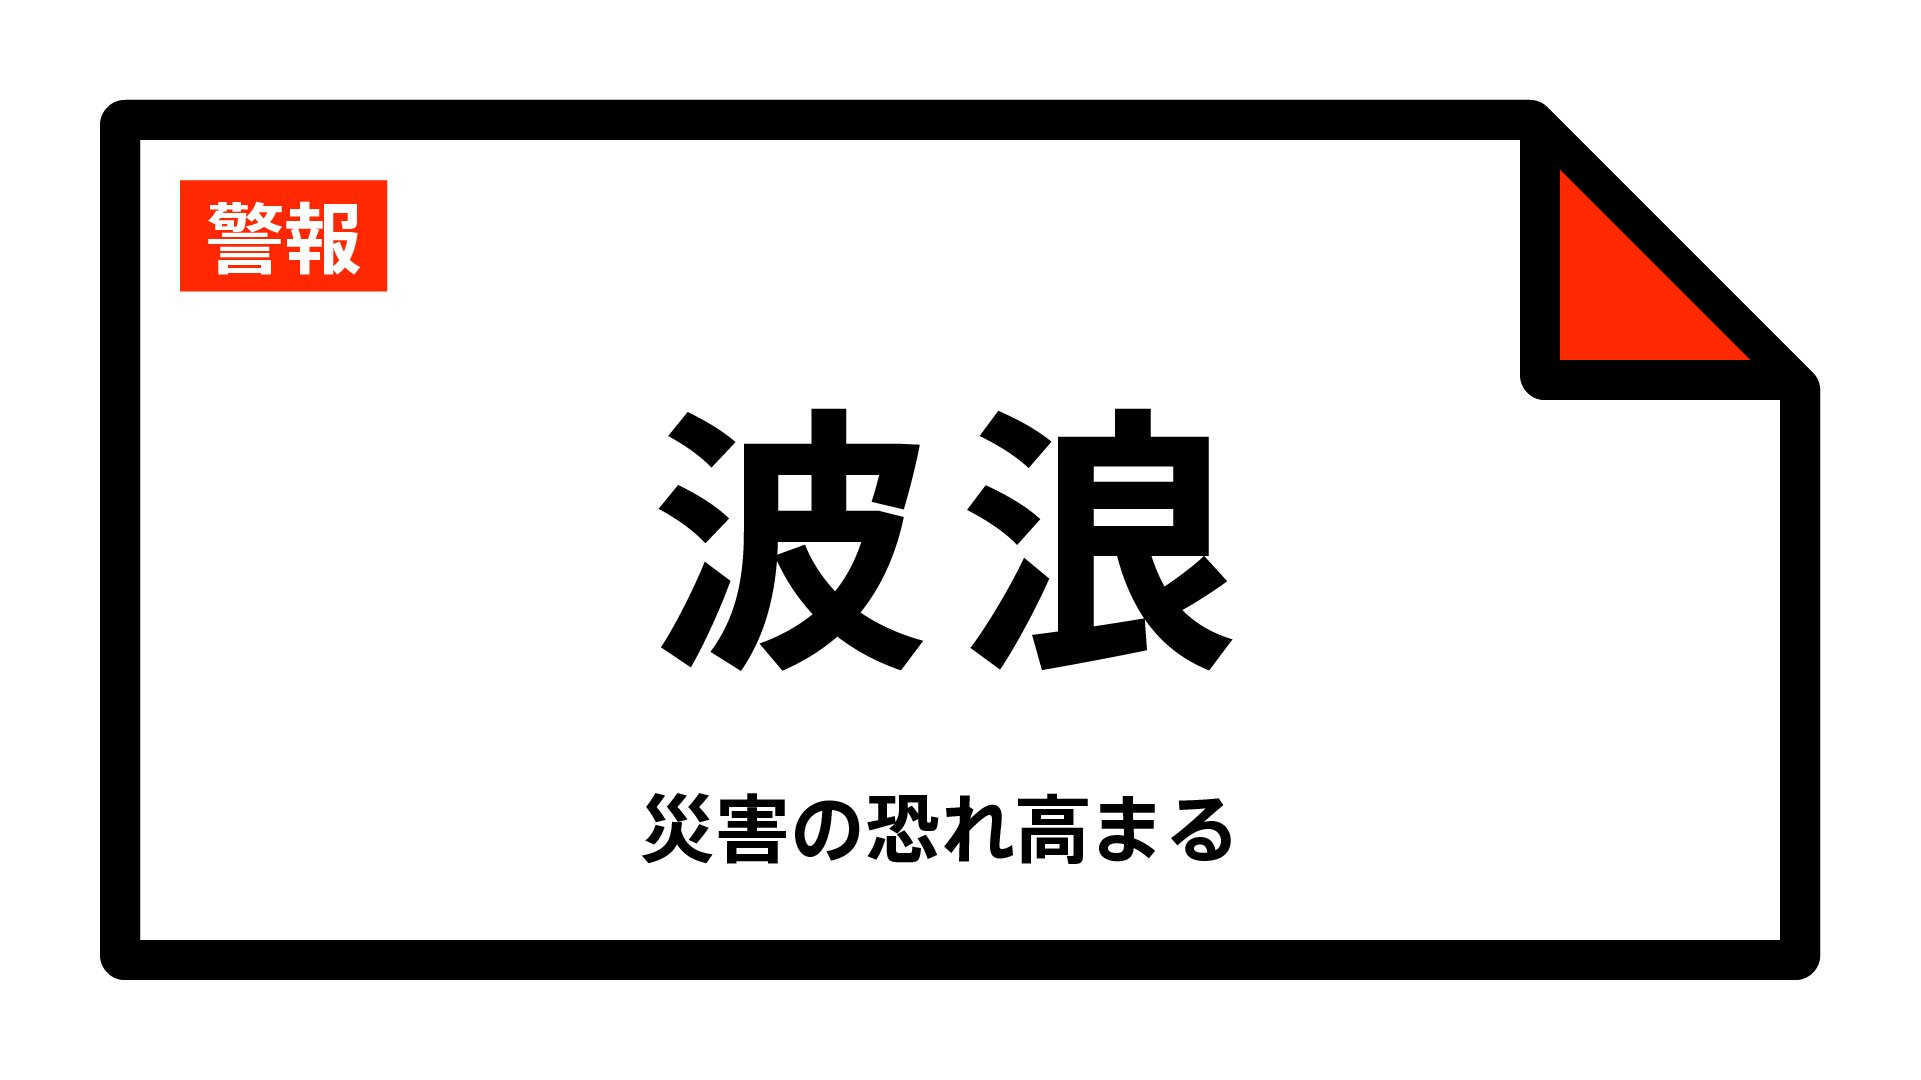 【波浪警報】東京都・小笠原村に発表